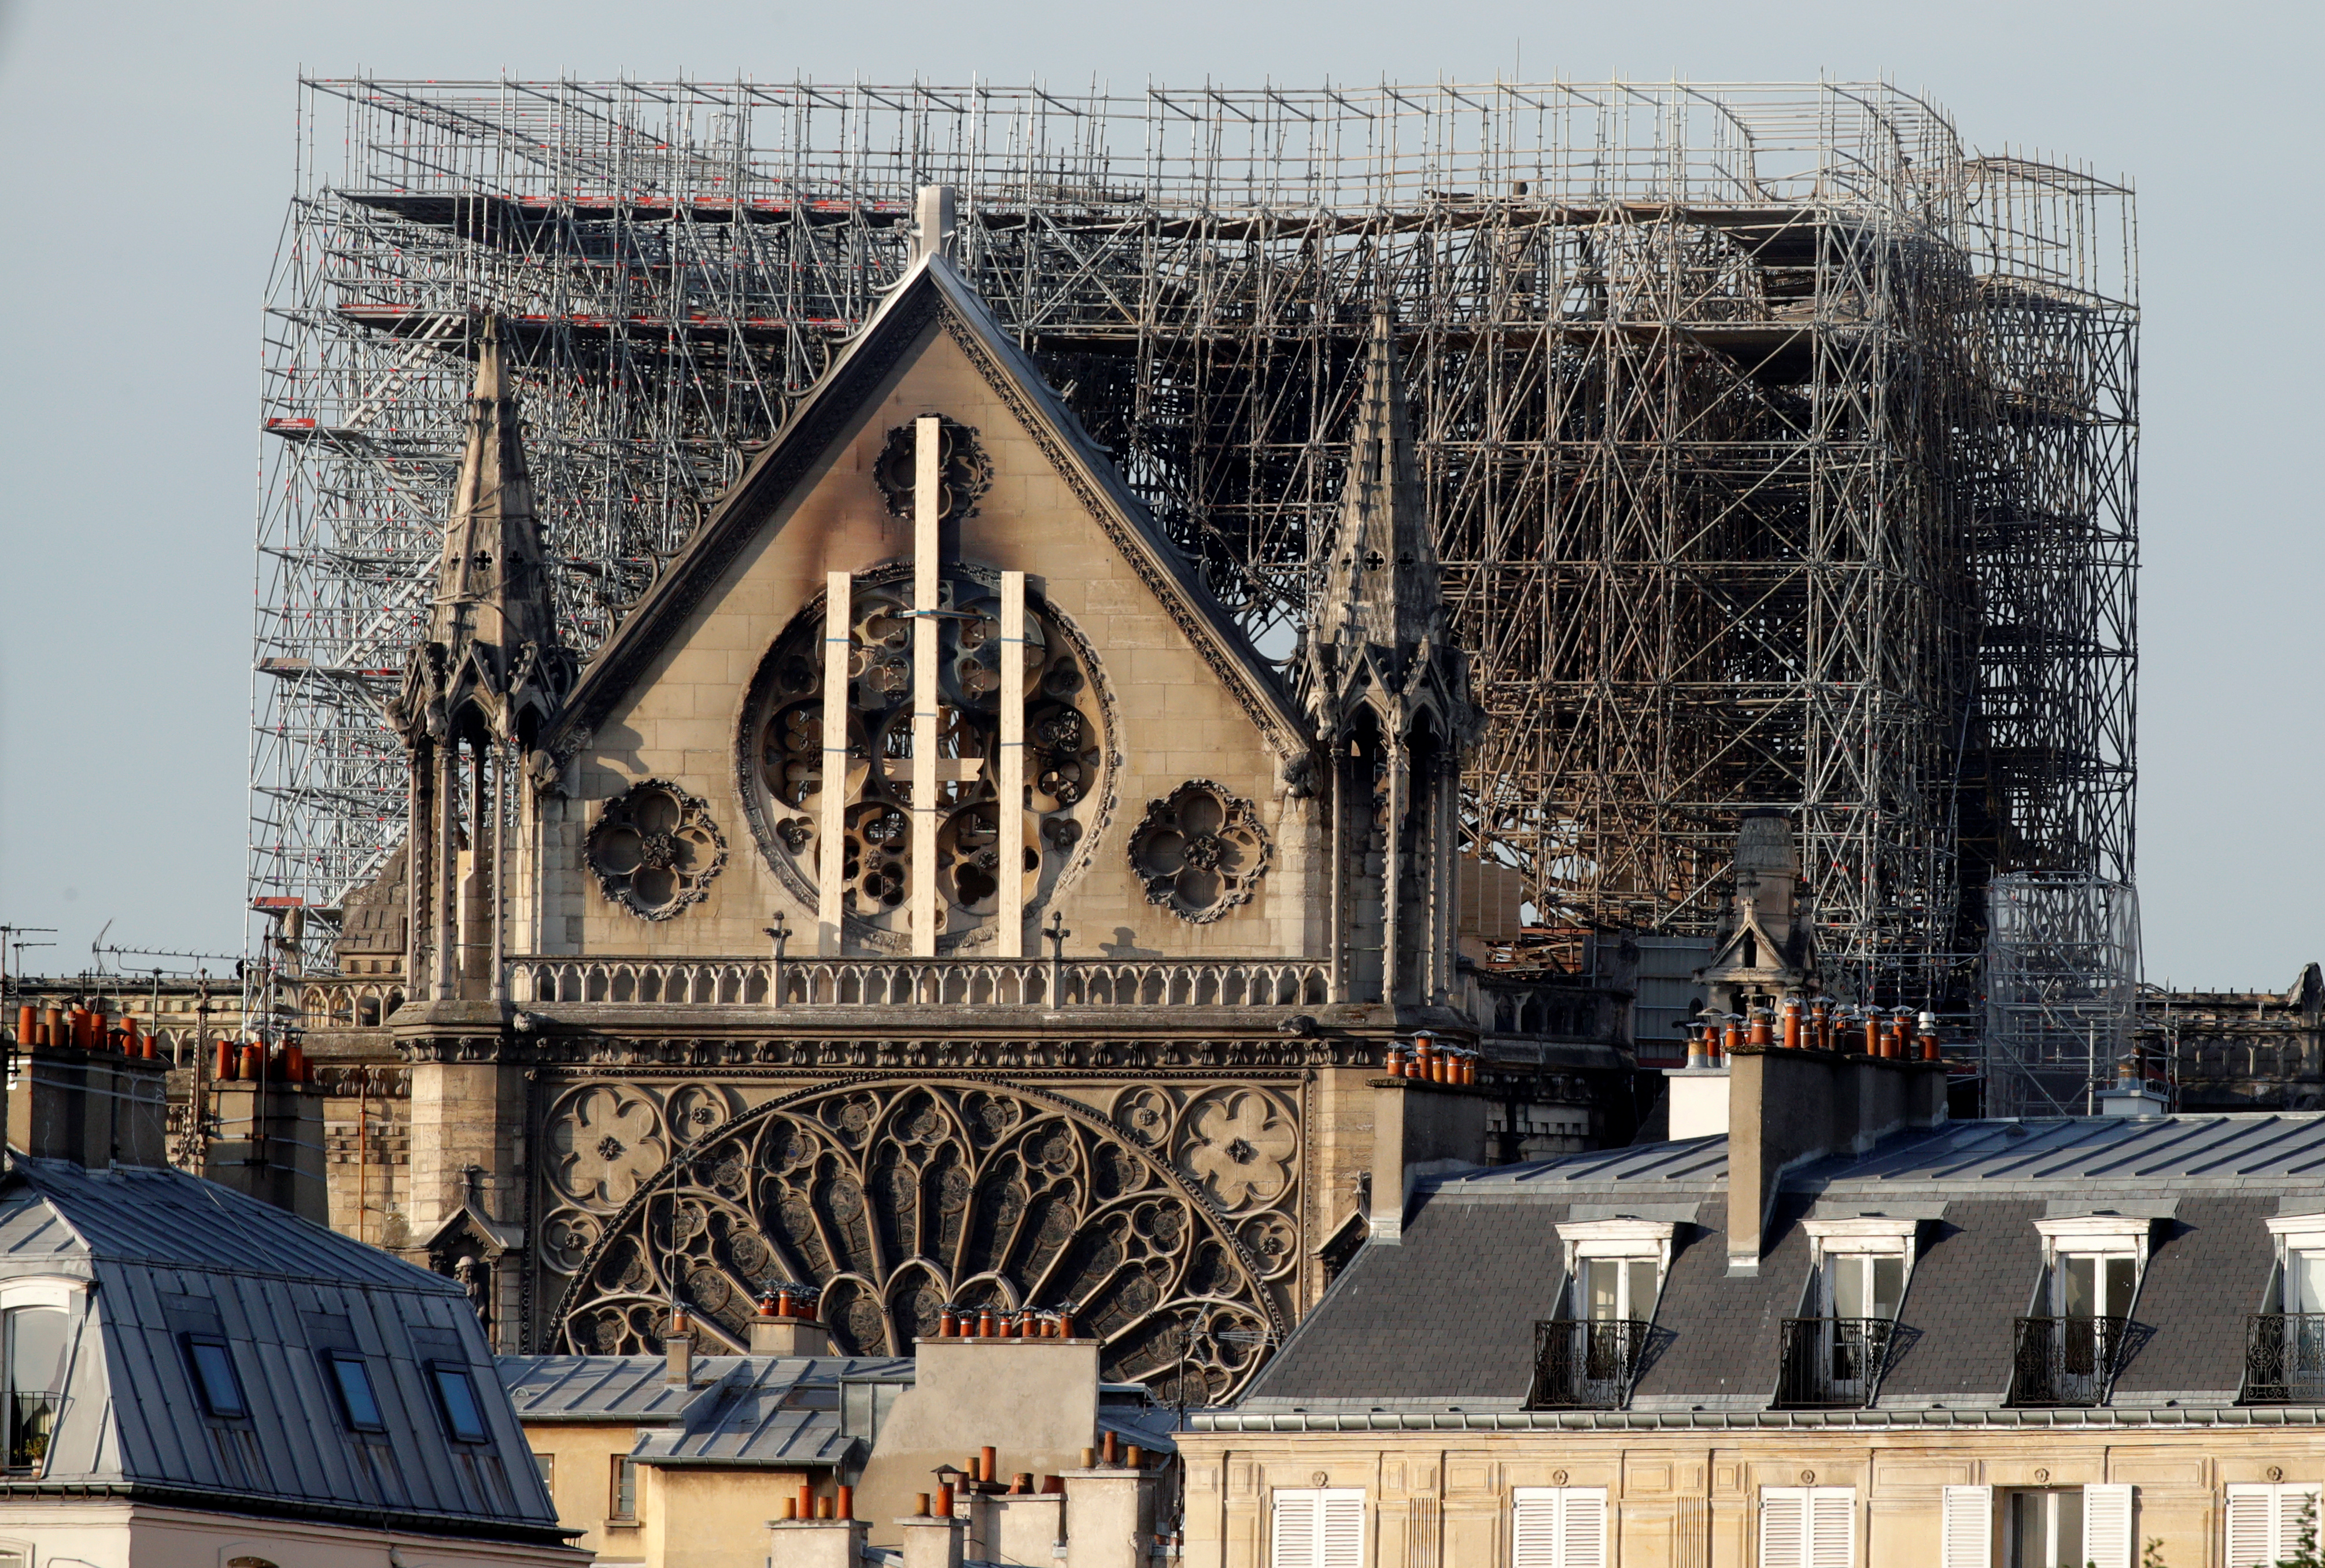 Cámara instalada en campanario de Notre Dame podría revelar claves sobre incendio